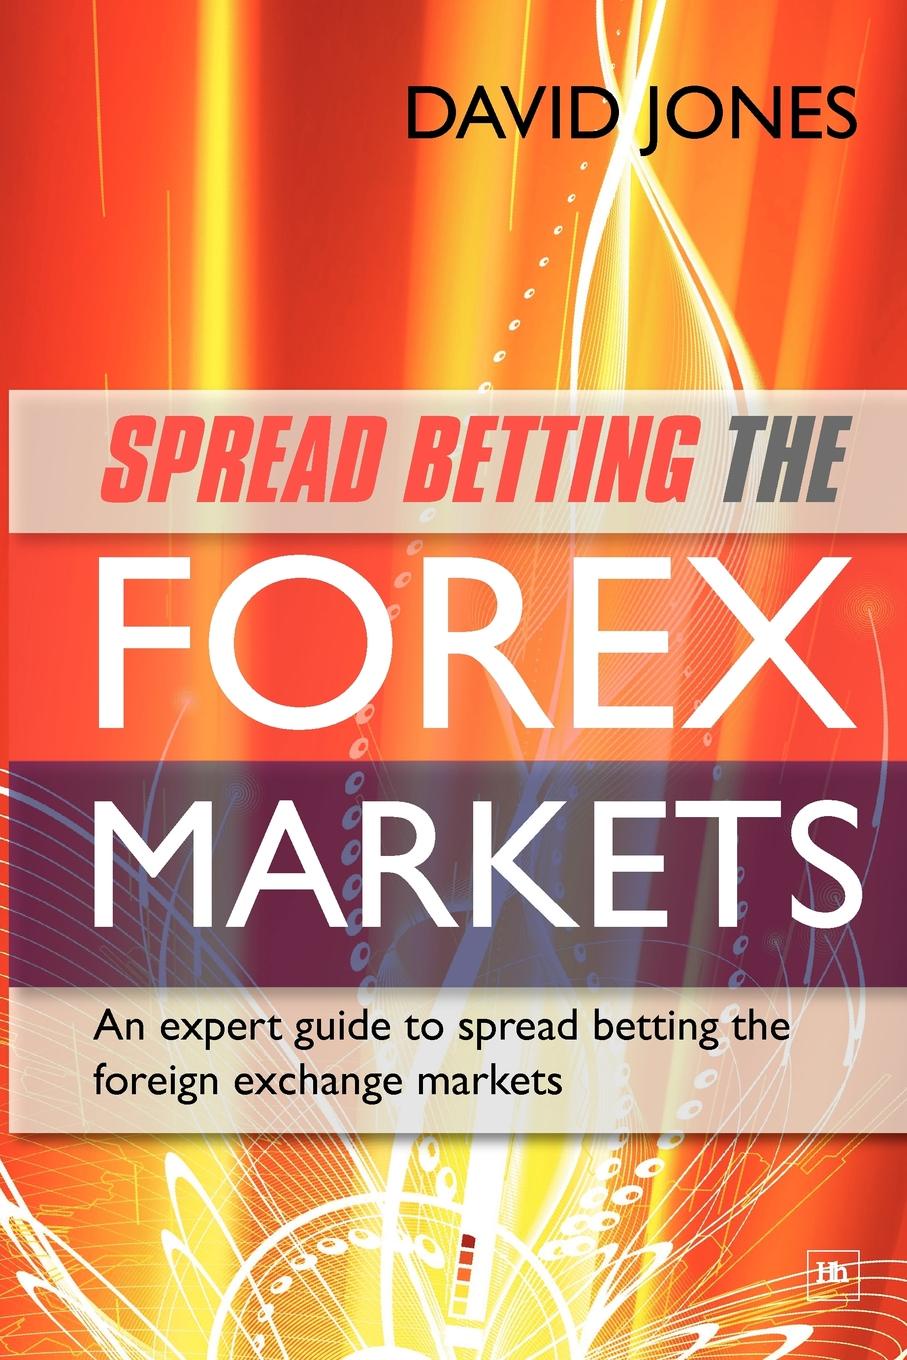 Spread Betting the Forex Markets. An Expert Guide to Making Money Spread Betting the Foreign Exchange Markets